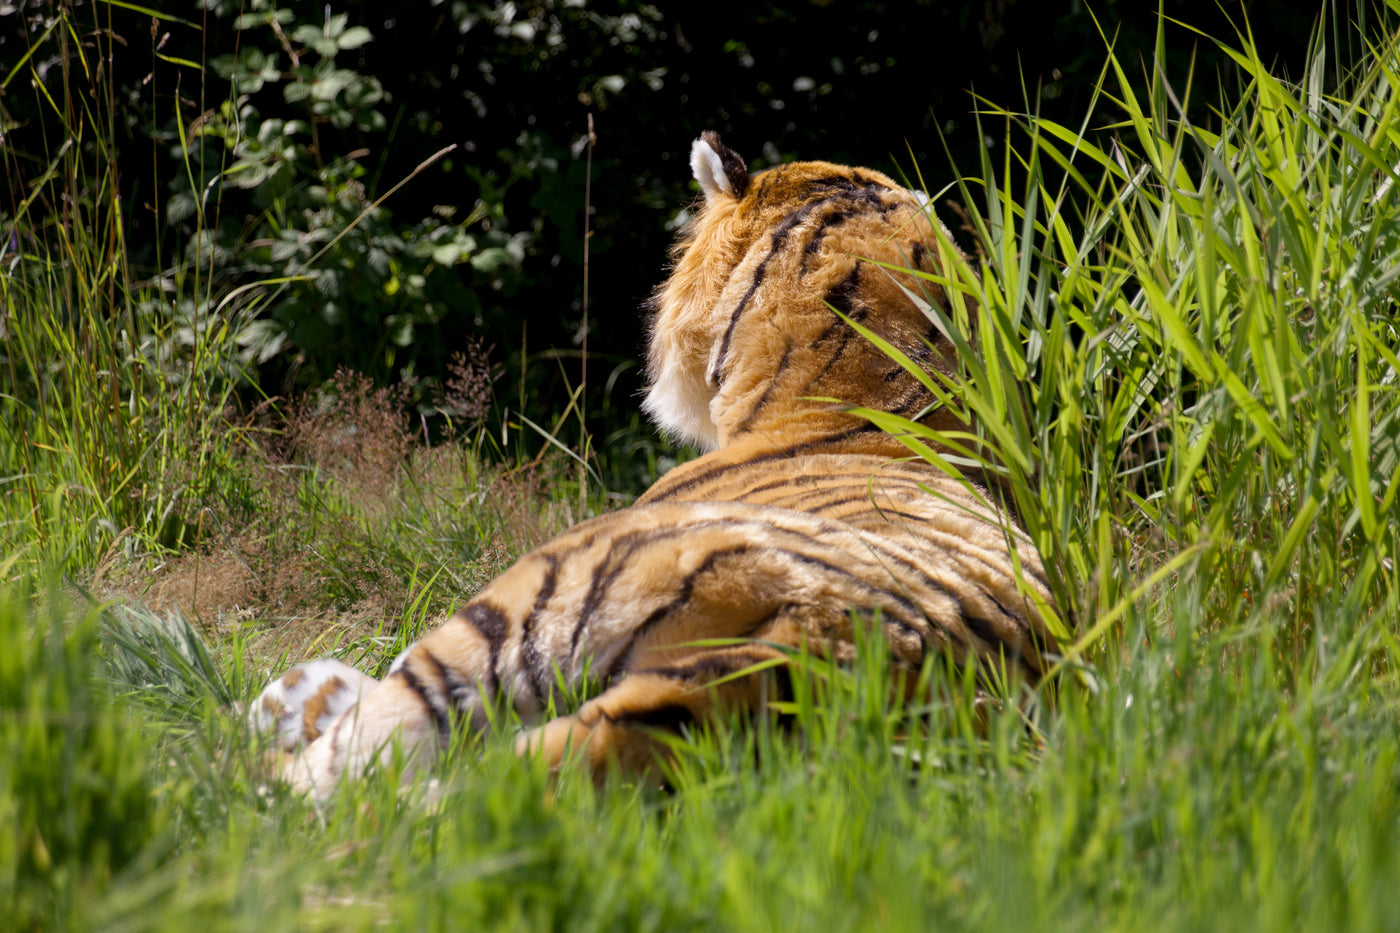 Lifesize Plush Bengal Tiger